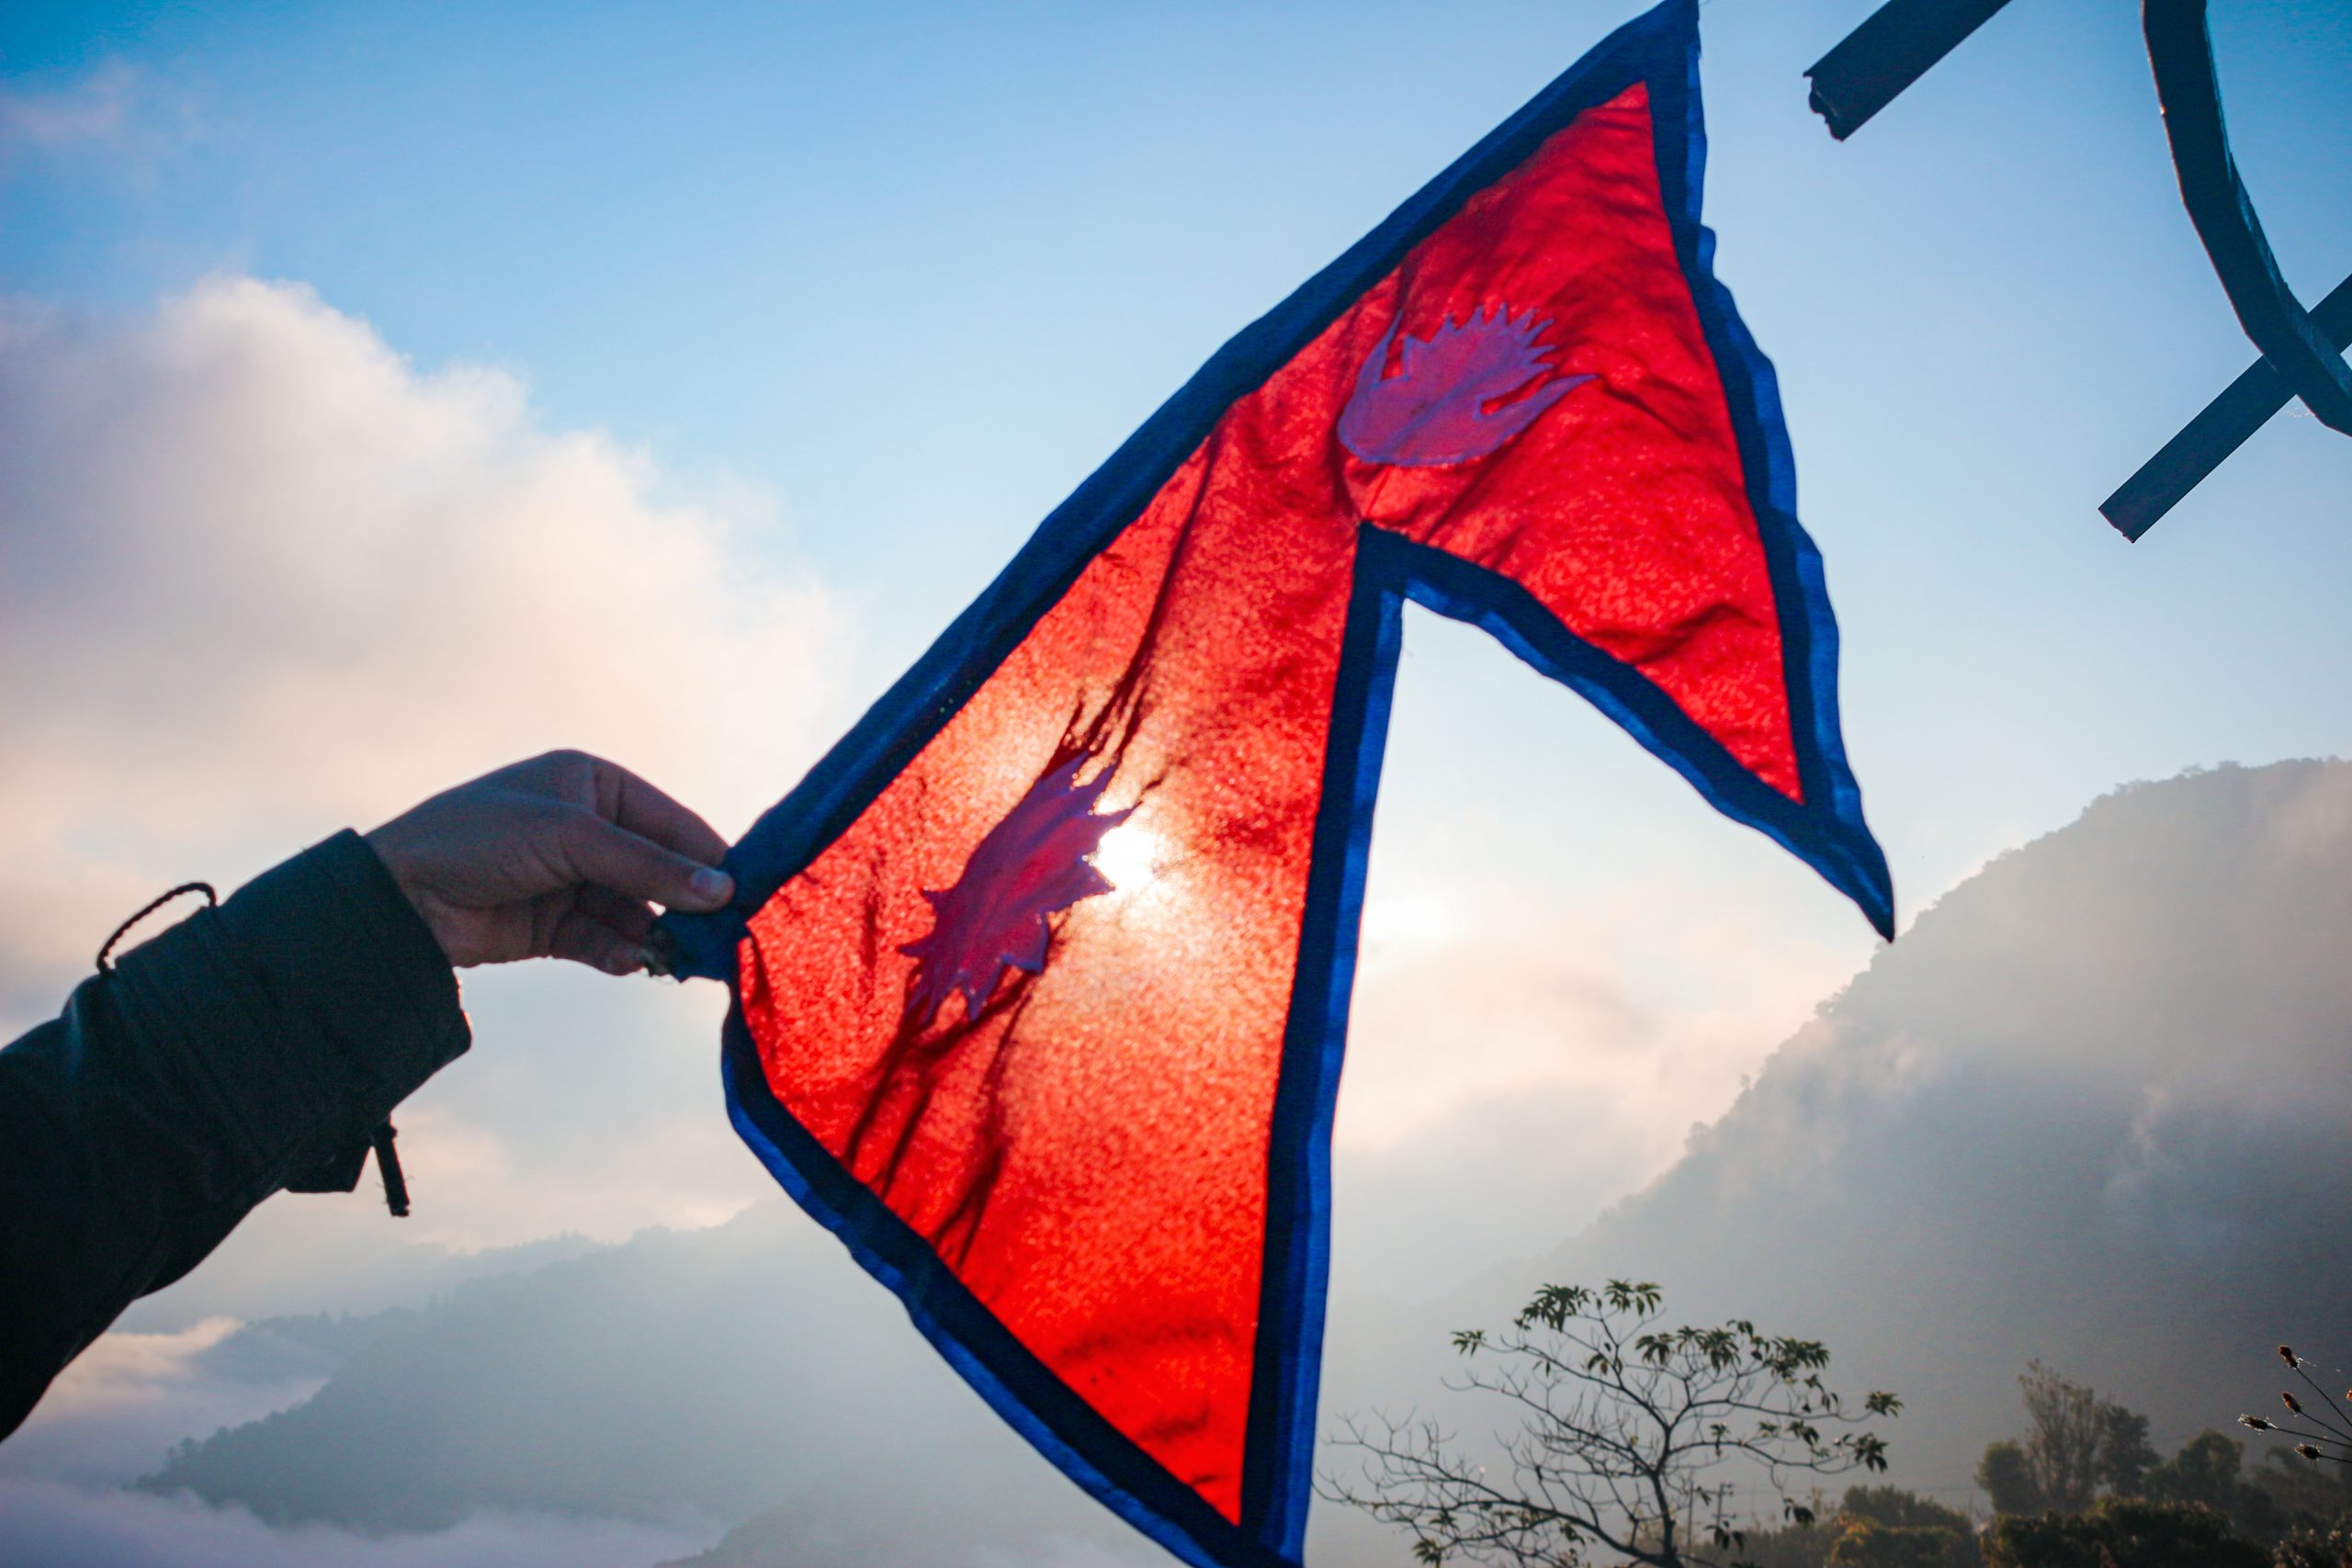 नेपाल ने हिमालय और हिंद महासागर के बीच निर्बाध संपर्क का आह्वान किया